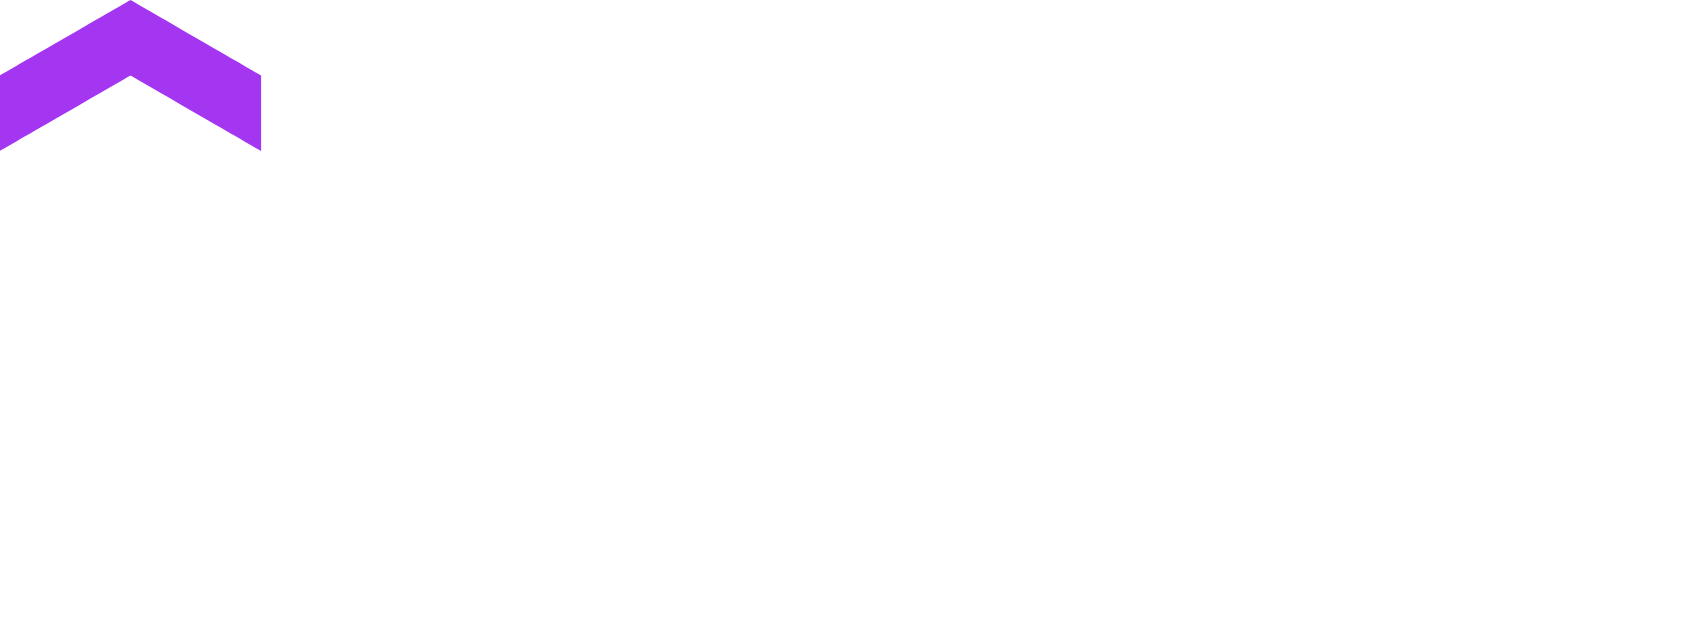 Udemy logo grand pour les fonds sombres (PNG transparent)